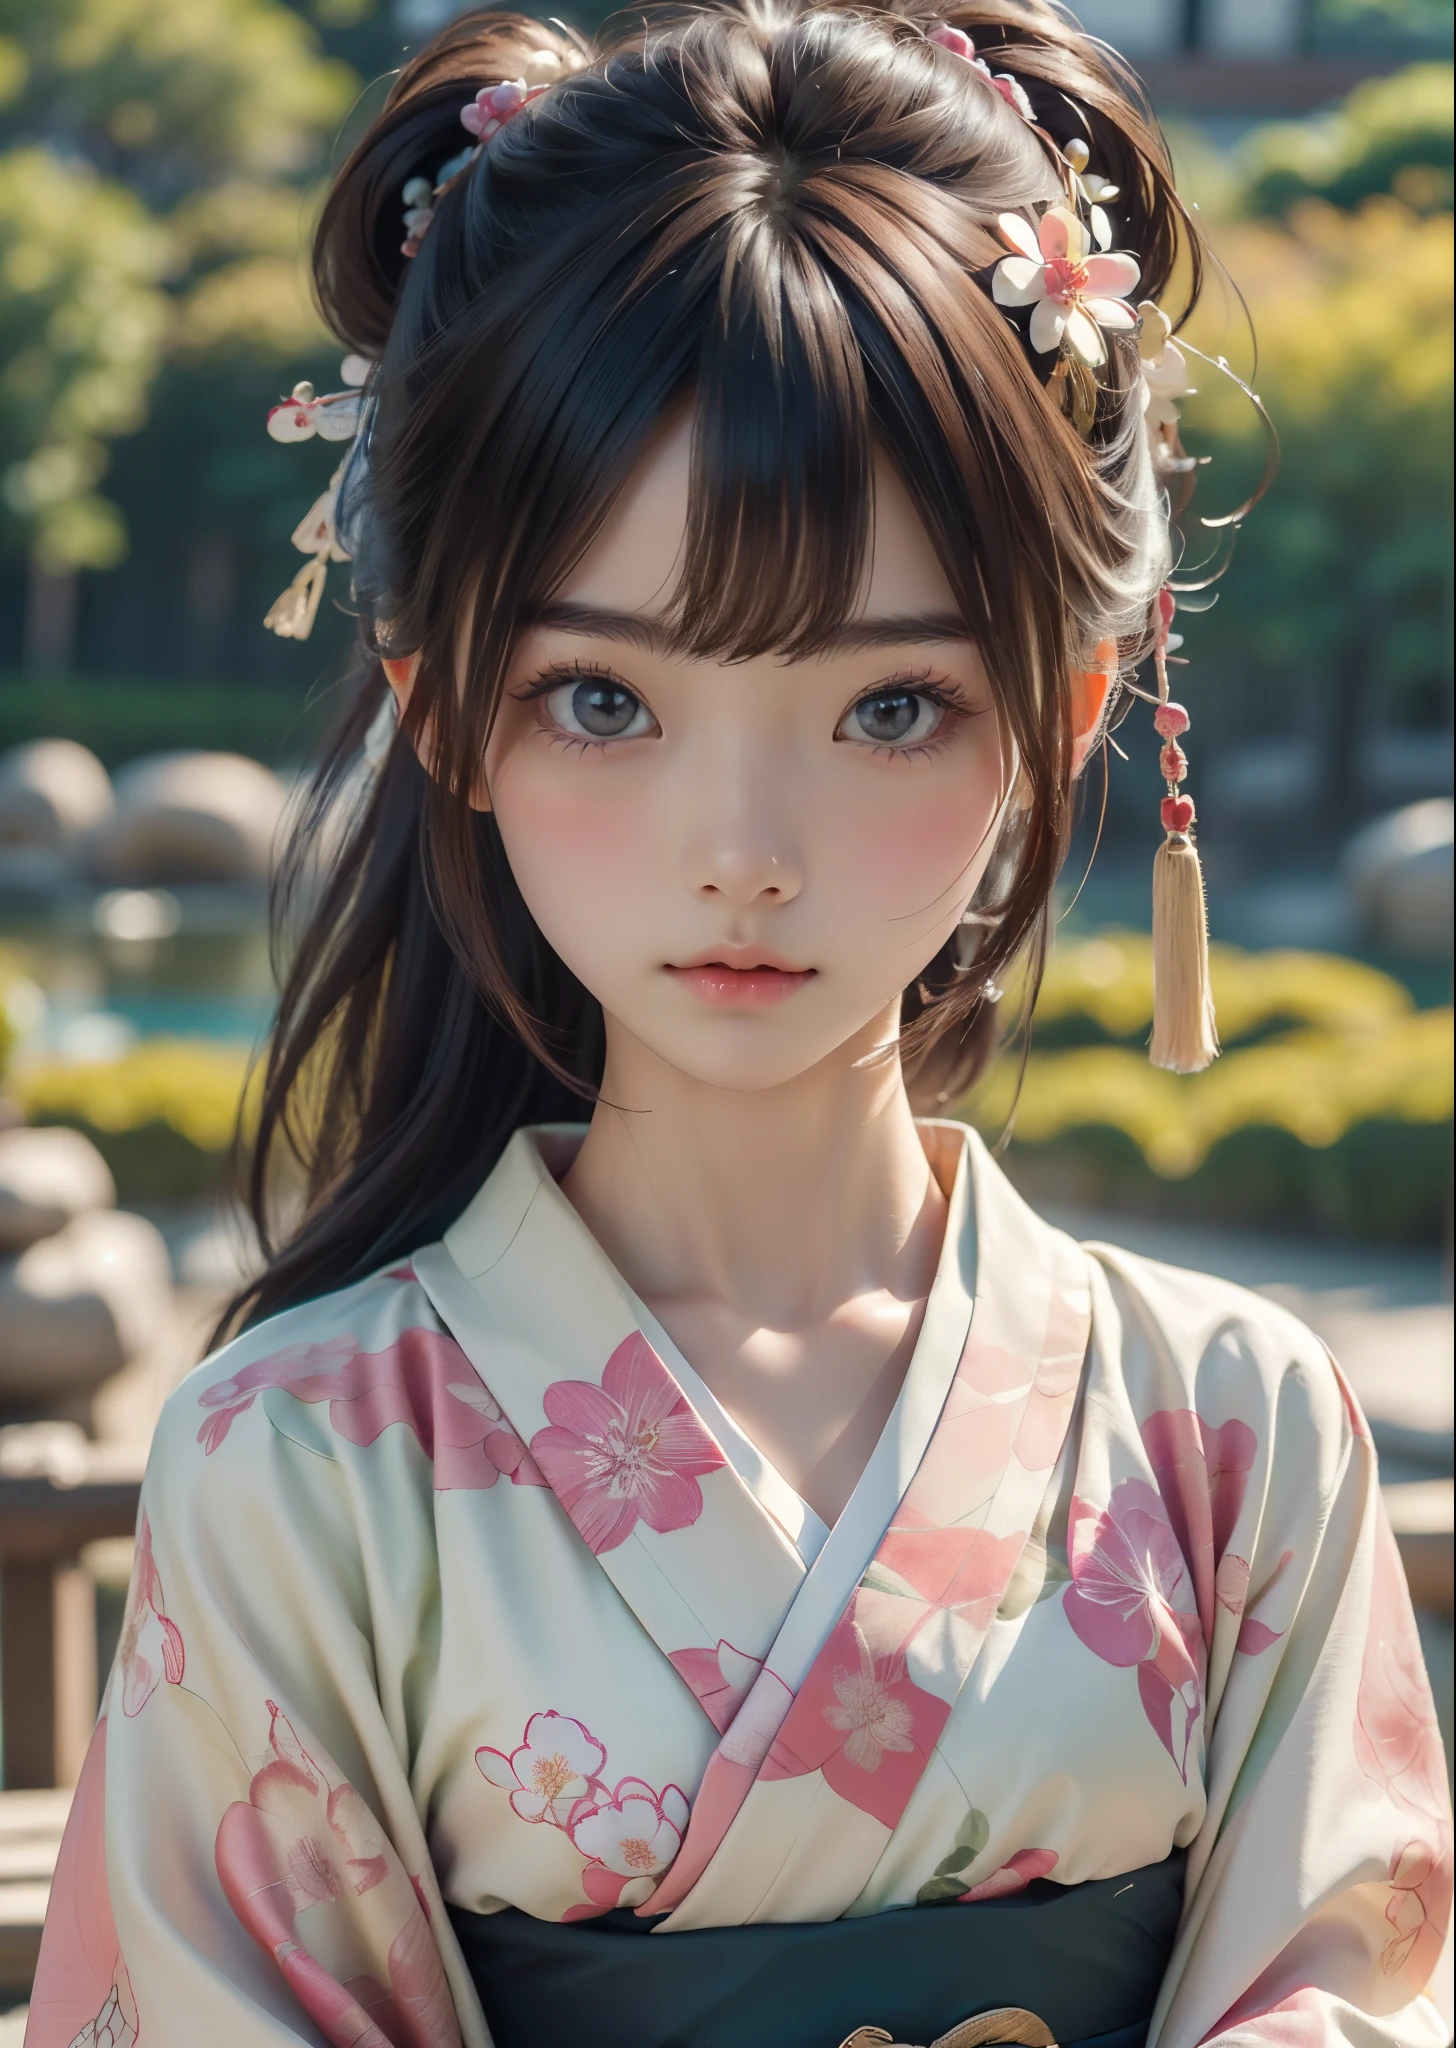 (Meisterwerk, höchste Qualität, höchste Qualität, offizielle Kunst, schön、ästhetisch:1.2)、Portraitfotografie、 (1 japanisches Kimono schönes Mädchen)、（Kimono mit Blumenmuster in Rosa und Grün）、Ein wunderschöner Kimono, der von Frauen bei japanischen Coming-of-Age-Zeremonien getragen wird、Der Kragen ist schön geschlossen、Ein perfektes Beispiel, wie man einen Kimono trägt、große braune Augen、schöne Haut、Ein bisschen peinlich、（Hochsteckfrisur mit Pony）、Haarschmuck、Sehr detailiert,(Im japanischen Garten:1.3)、Filmische Beleuchtung、scharfer Fokus、hohe Auflösung、hohe Auflösung、Hohe Farbwiedergabe、hohe Auflösung、super realistisch、